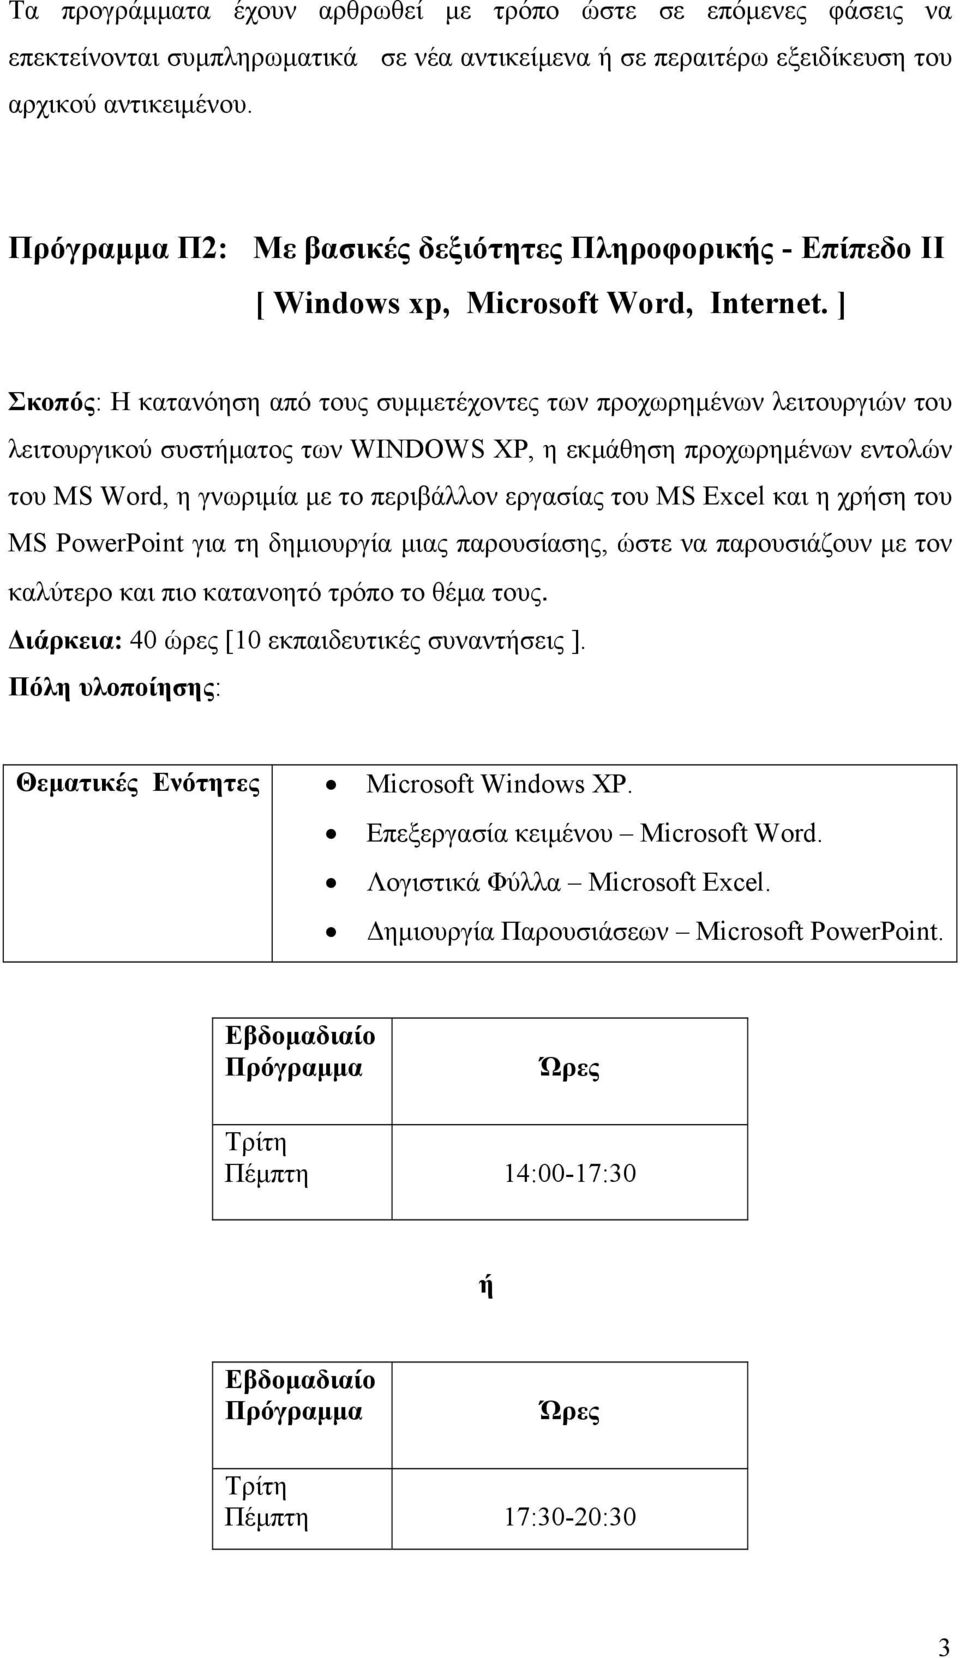 ] Σκοπός: Η κατανόηση από τους συμμετέχοντες των προχωρημένων λειτουργιών του λειτουργικού συστήματος των WINDOWS XP, η εκμάθηση προχωρημένων εντολών του MS Word, η γνωριμία με το περιβάλλον εργασίας